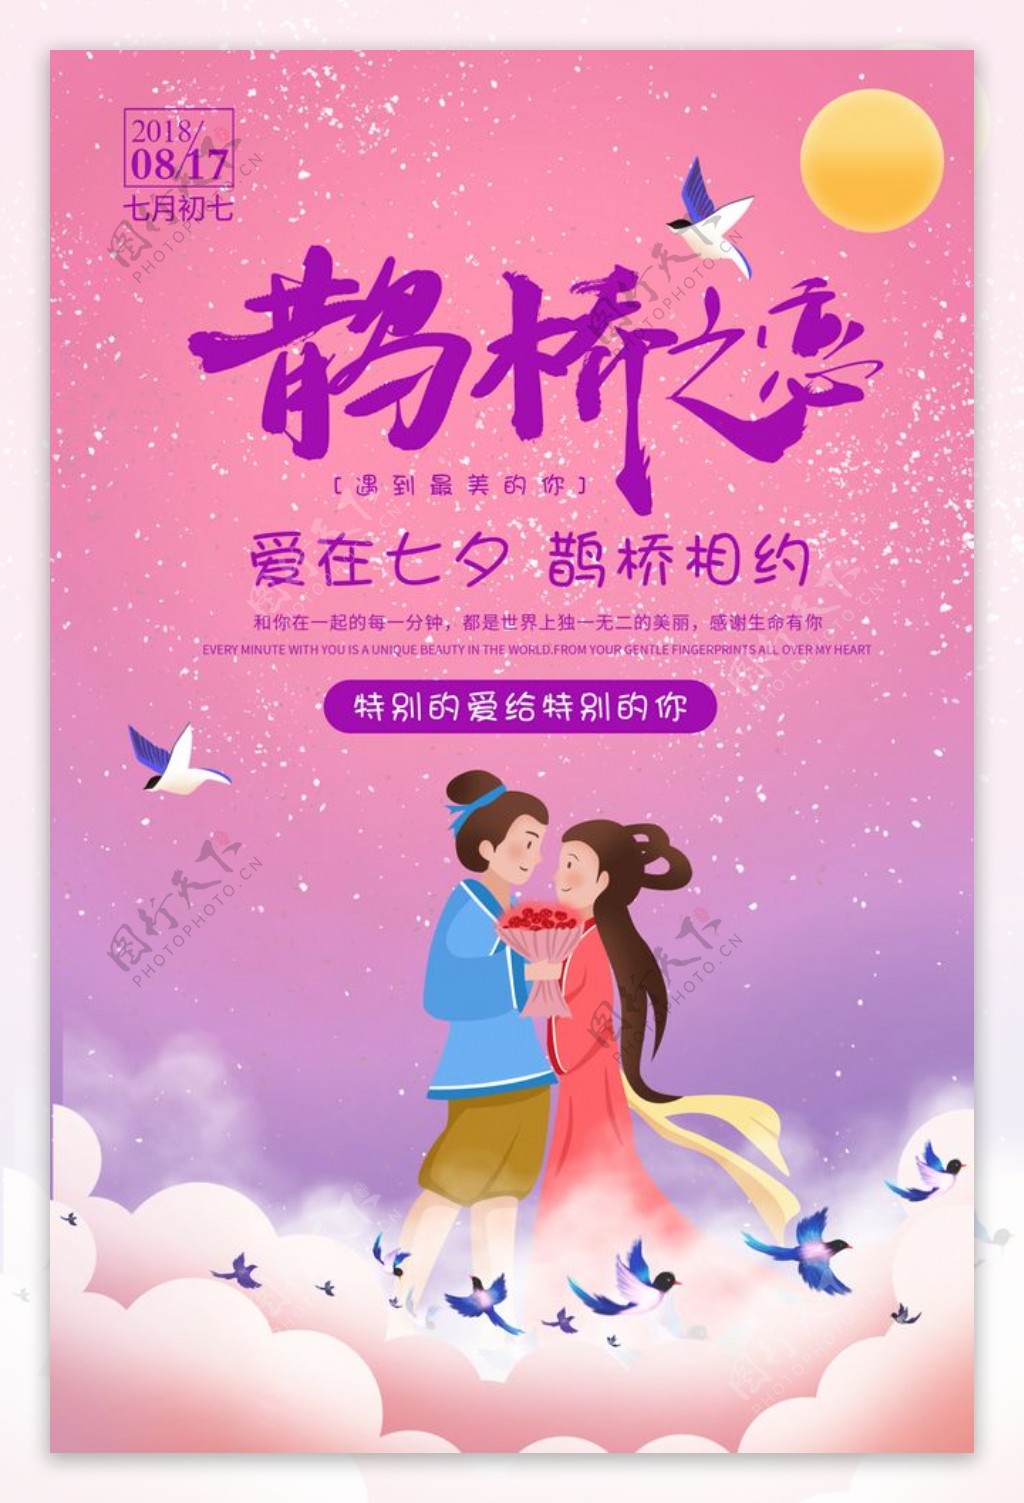 牛郎织女七夕节宣传海报